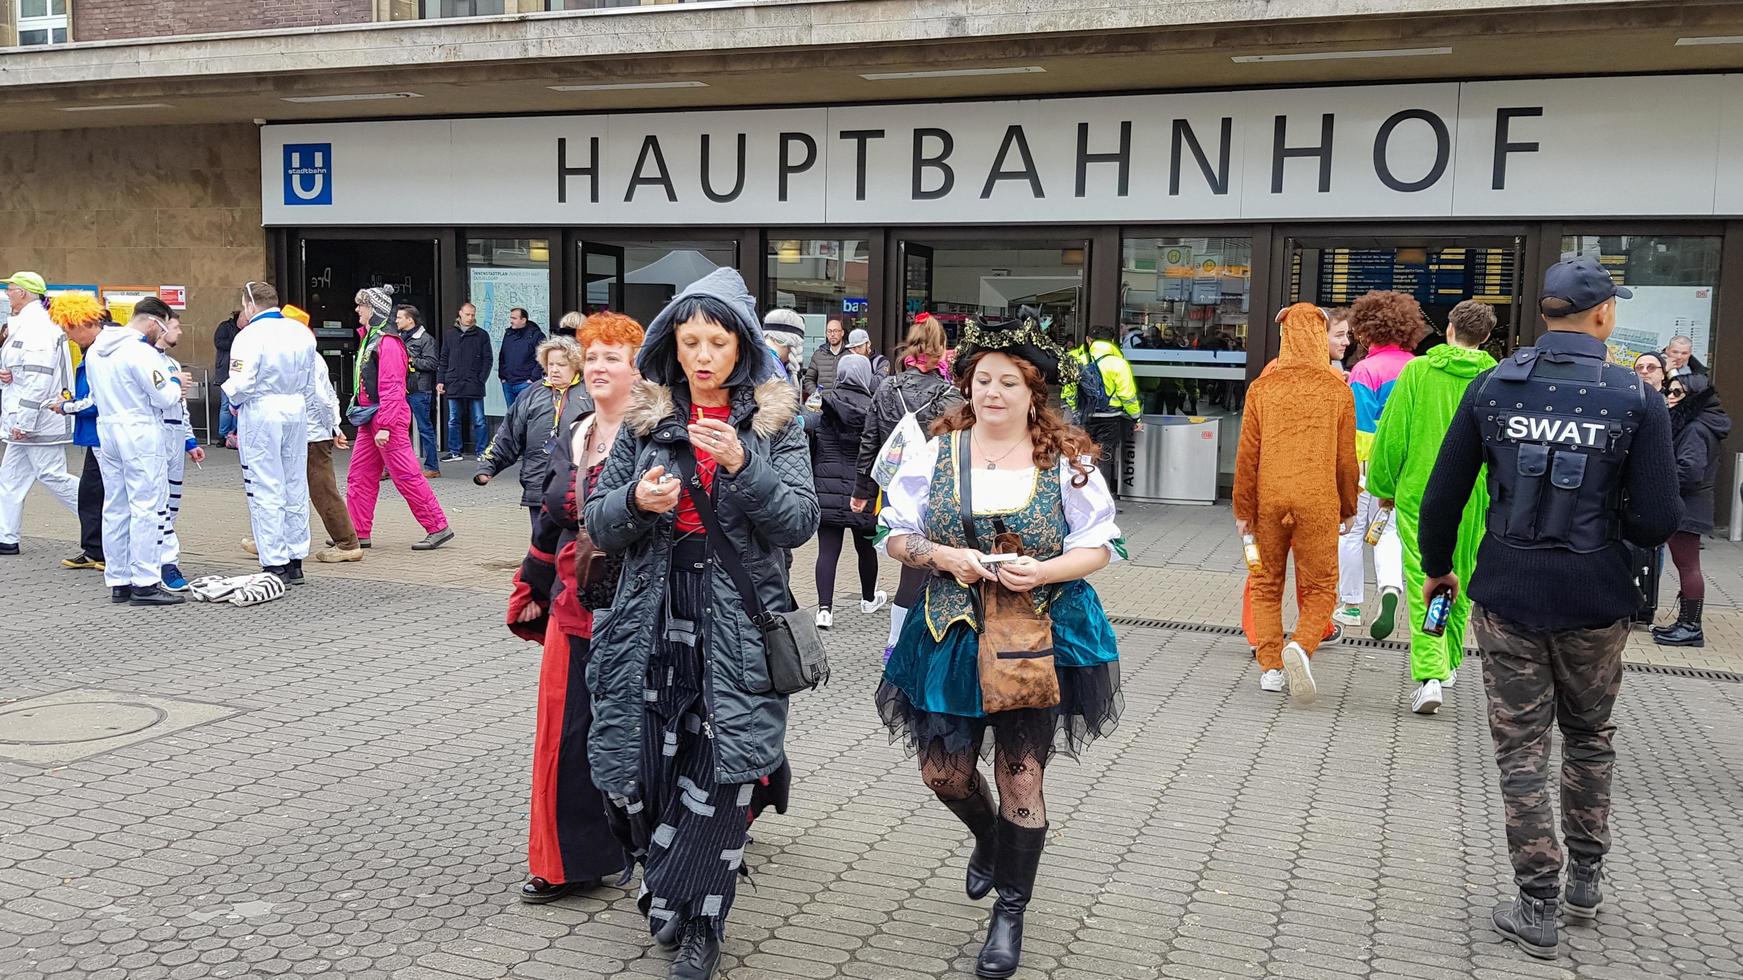 dusseldorf, alemania - 26 de febrero de 2020. entrada principal a la estación principal de trenes de dusseldorf hauptbahnhof durante el carnaval. fiesta de risas y vestidos coloridos. foto